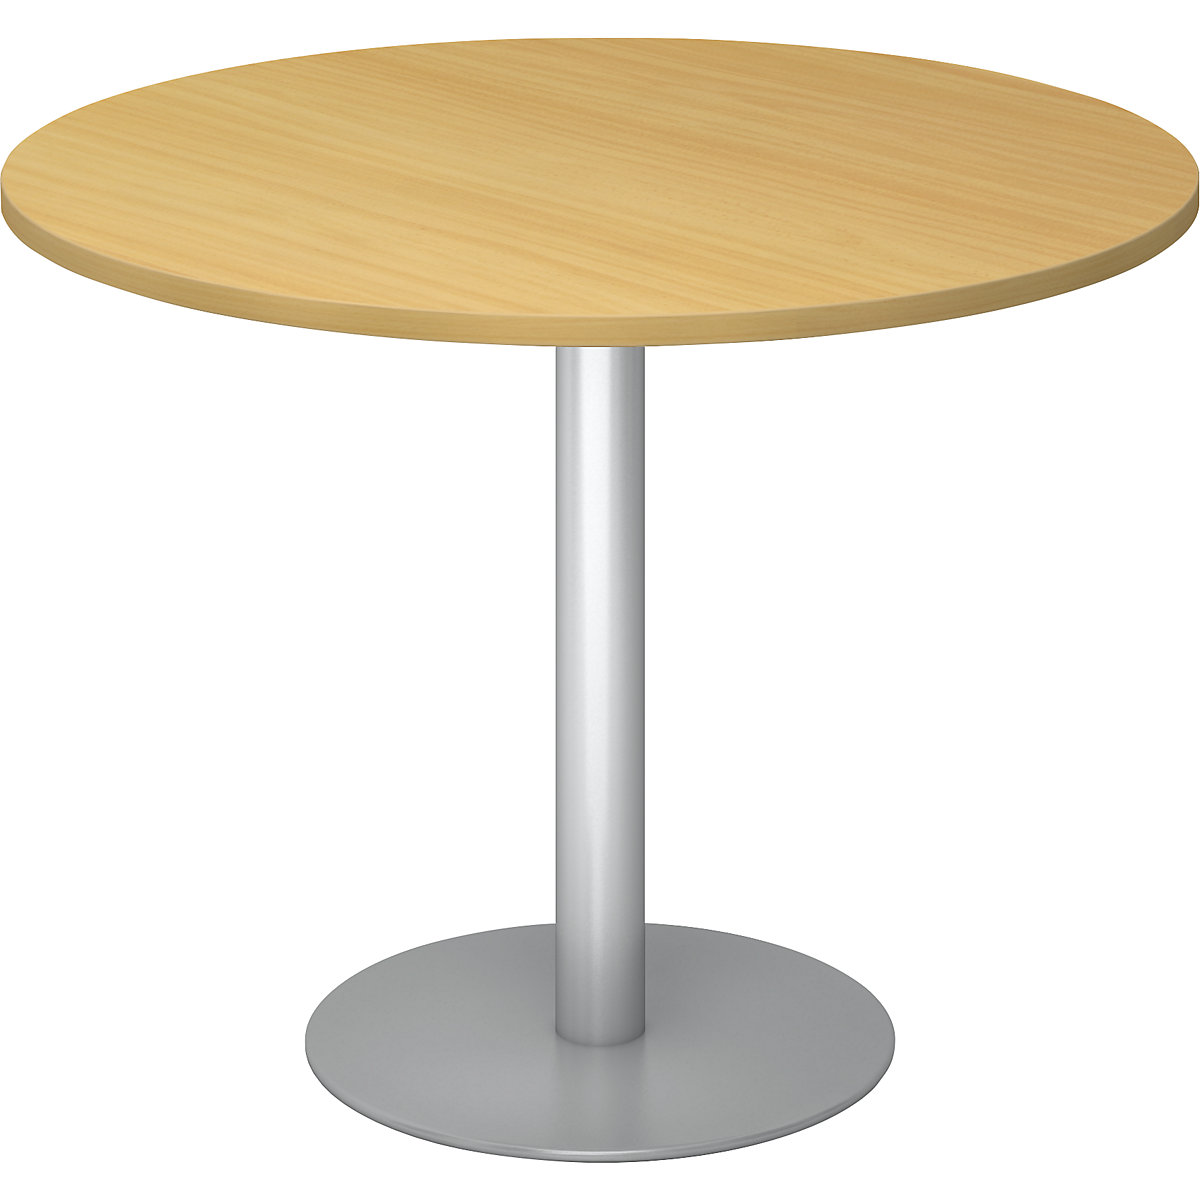 Tárgyalóasztal, Ø 1000 mm, 755 mm magas, ezüst váz, bükk-dekor asztallap